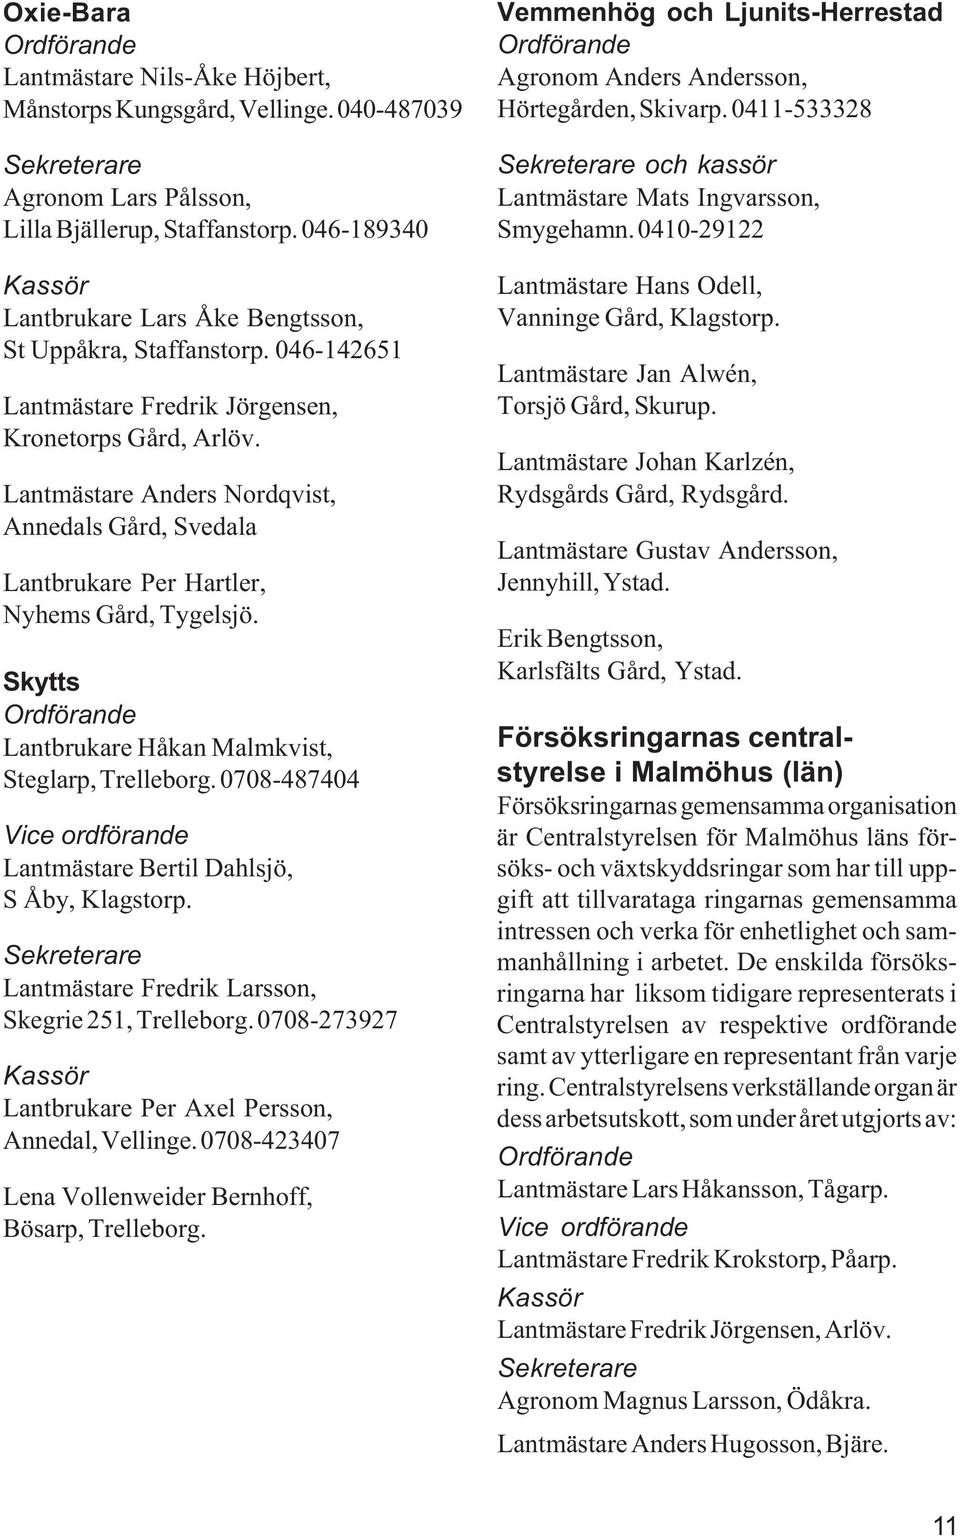 Lantmästare Anders Nordqvist, Annedals Gård, Svedala Lantbrukare Per Hartler, Nyhems Gård, Tygelsjö. Skytts Ordförande Lantbrukare Håkan Malmkvist, Steglarp, Trelleborg.